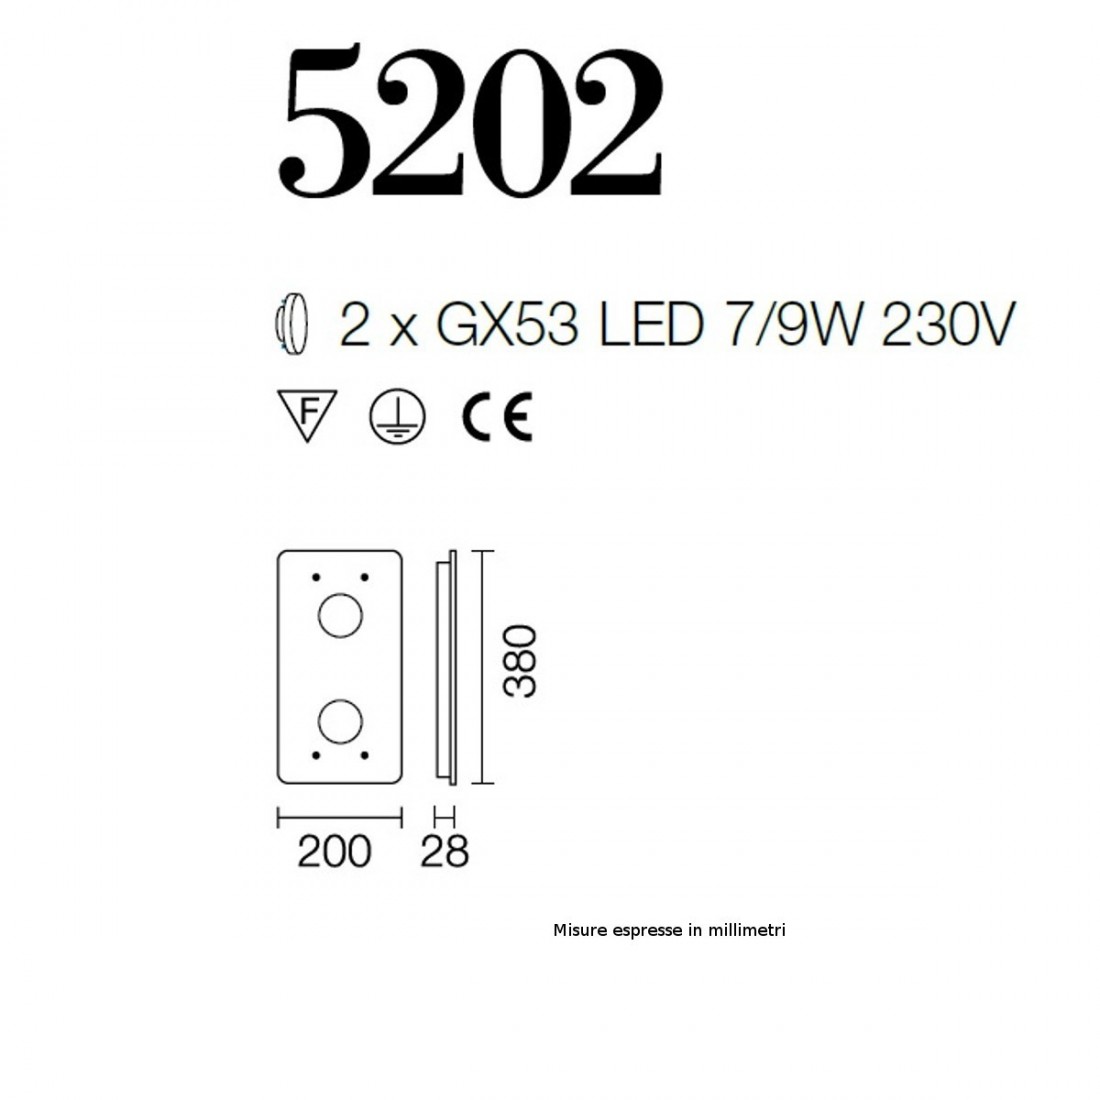 Applique SV-INCOLOR 5202 GX53 LED 9W vetro colorato rettangolare lampada parete soffitto modena interno